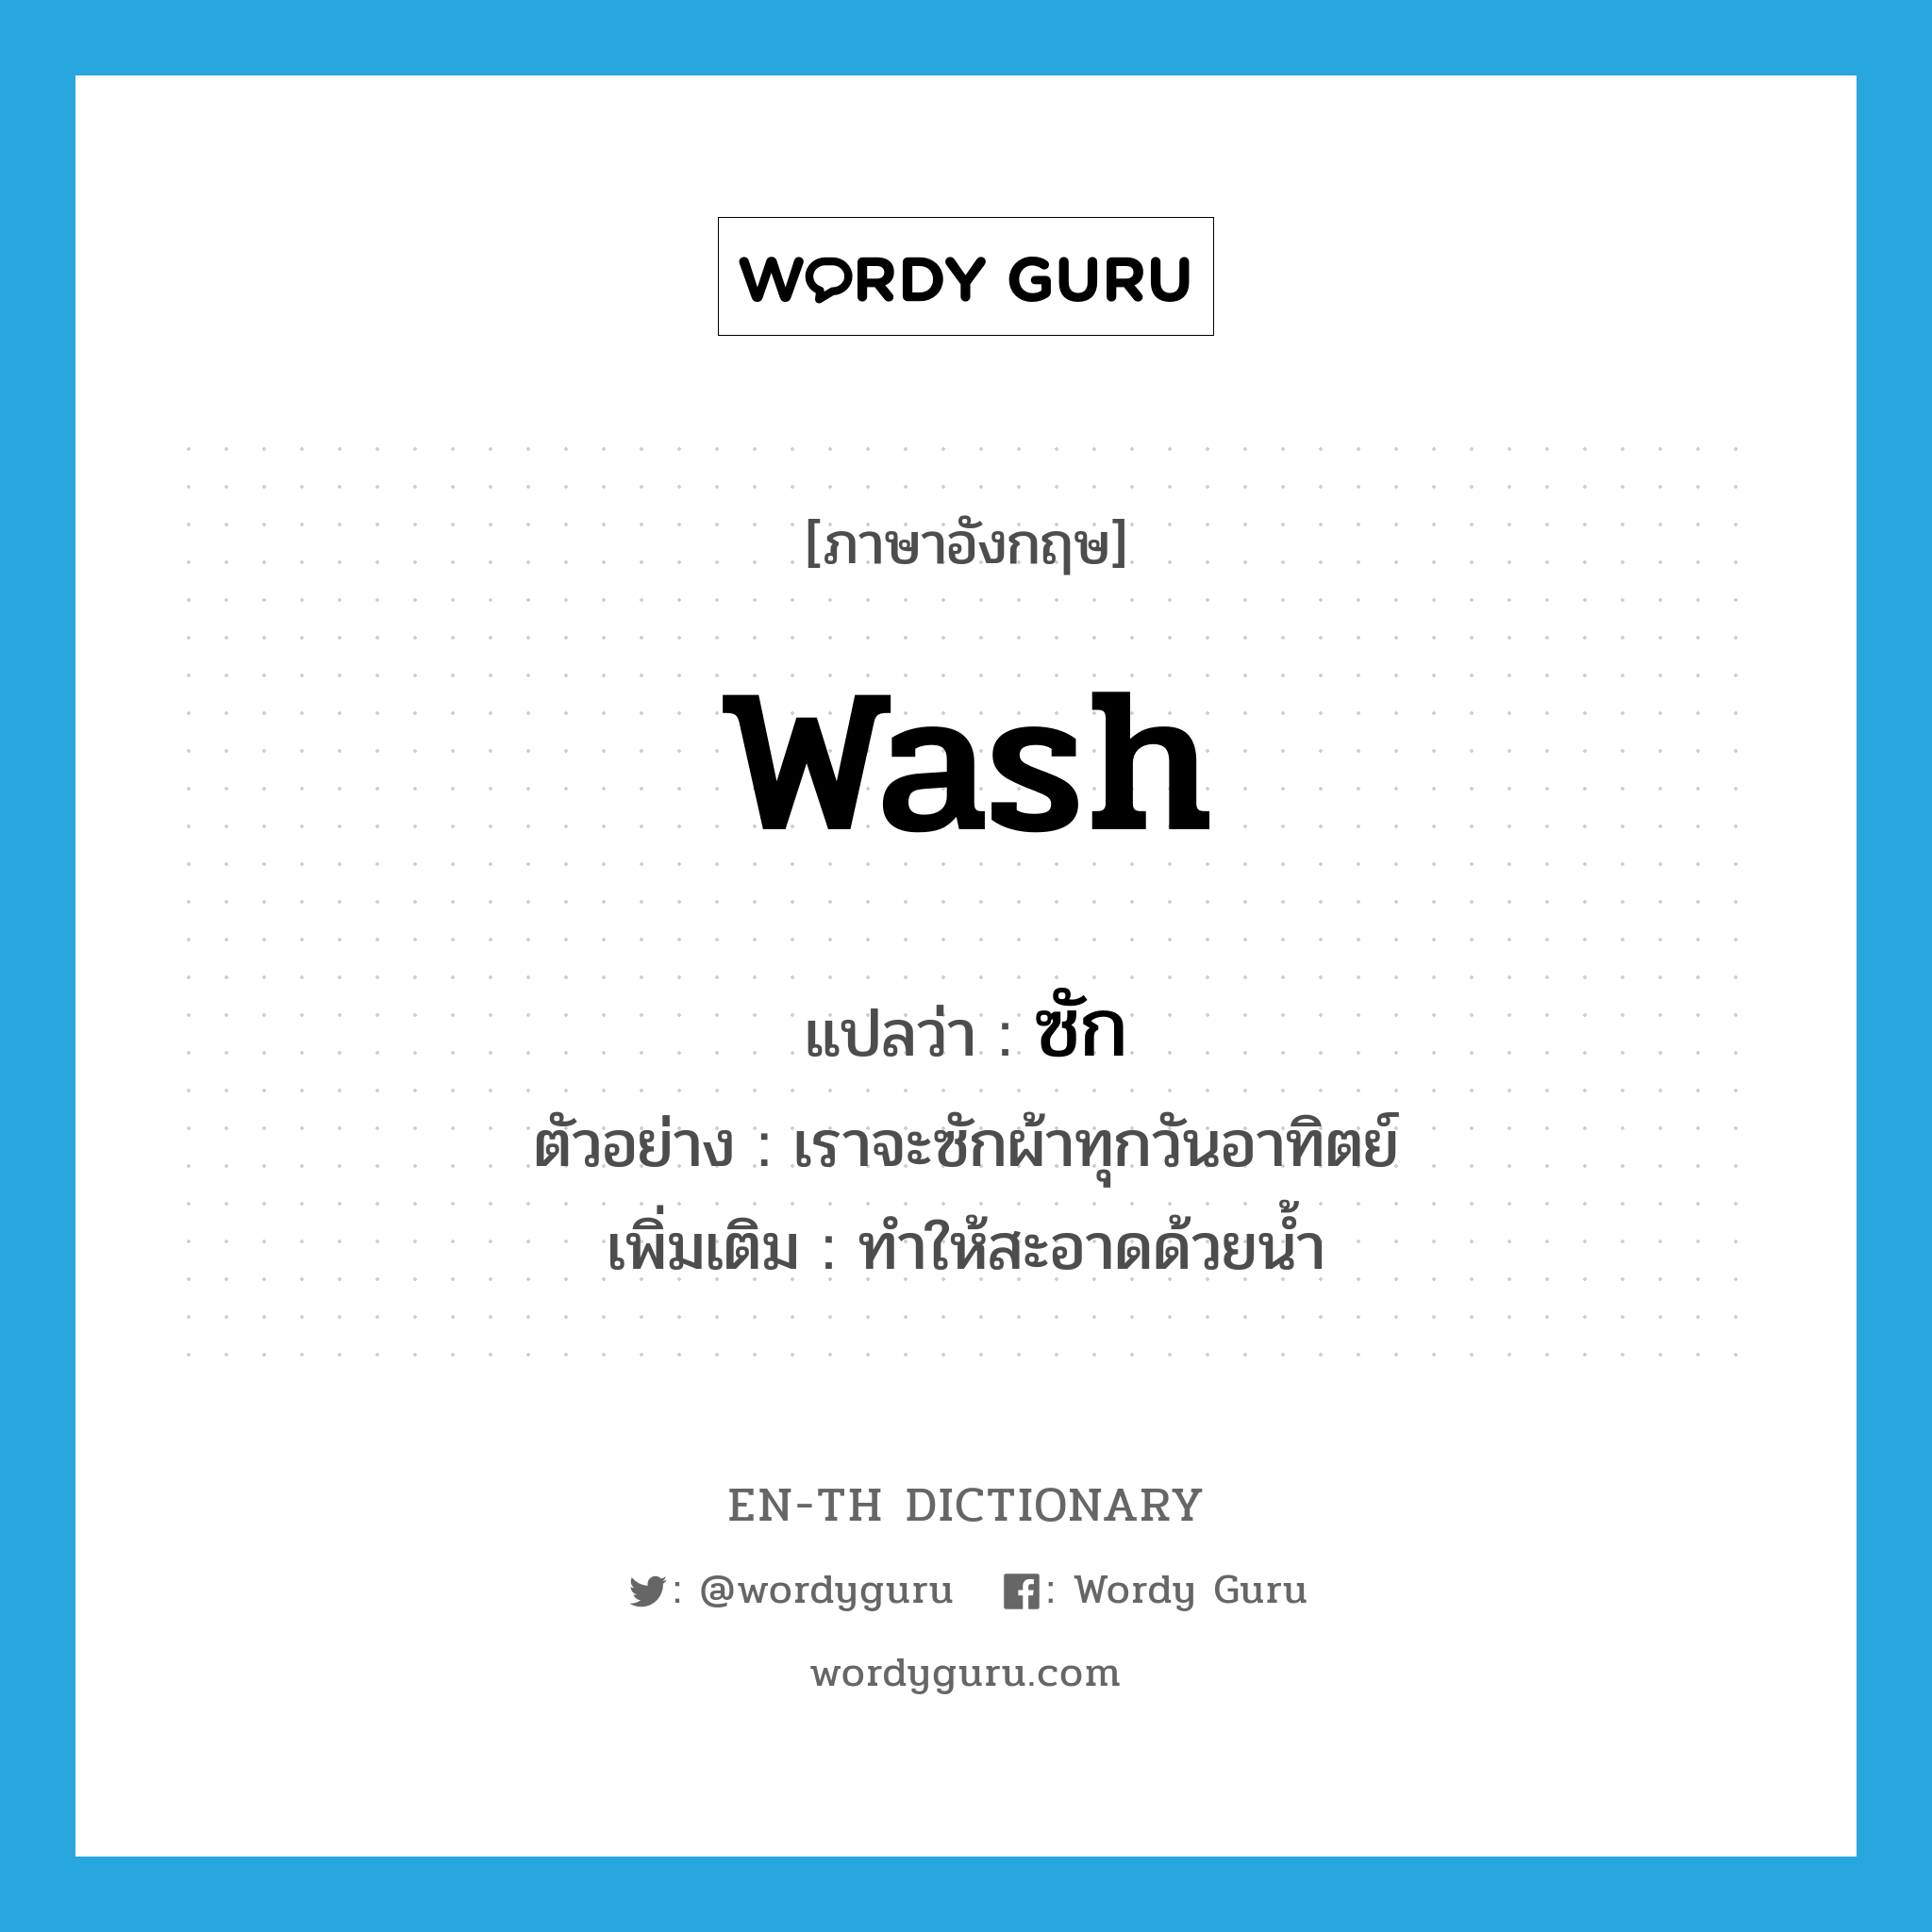 ซัก ภาษาอังกฤษ?, คำศัพท์ภาษาอังกฤษ ซัก แปลว่า wash ประเภท V ตัวอย่าง เราจะซักผ้าทุกวันอาทิตย์ เพิ่มเติม ทำให้สะอาดด้วยน้ำ หมวด V